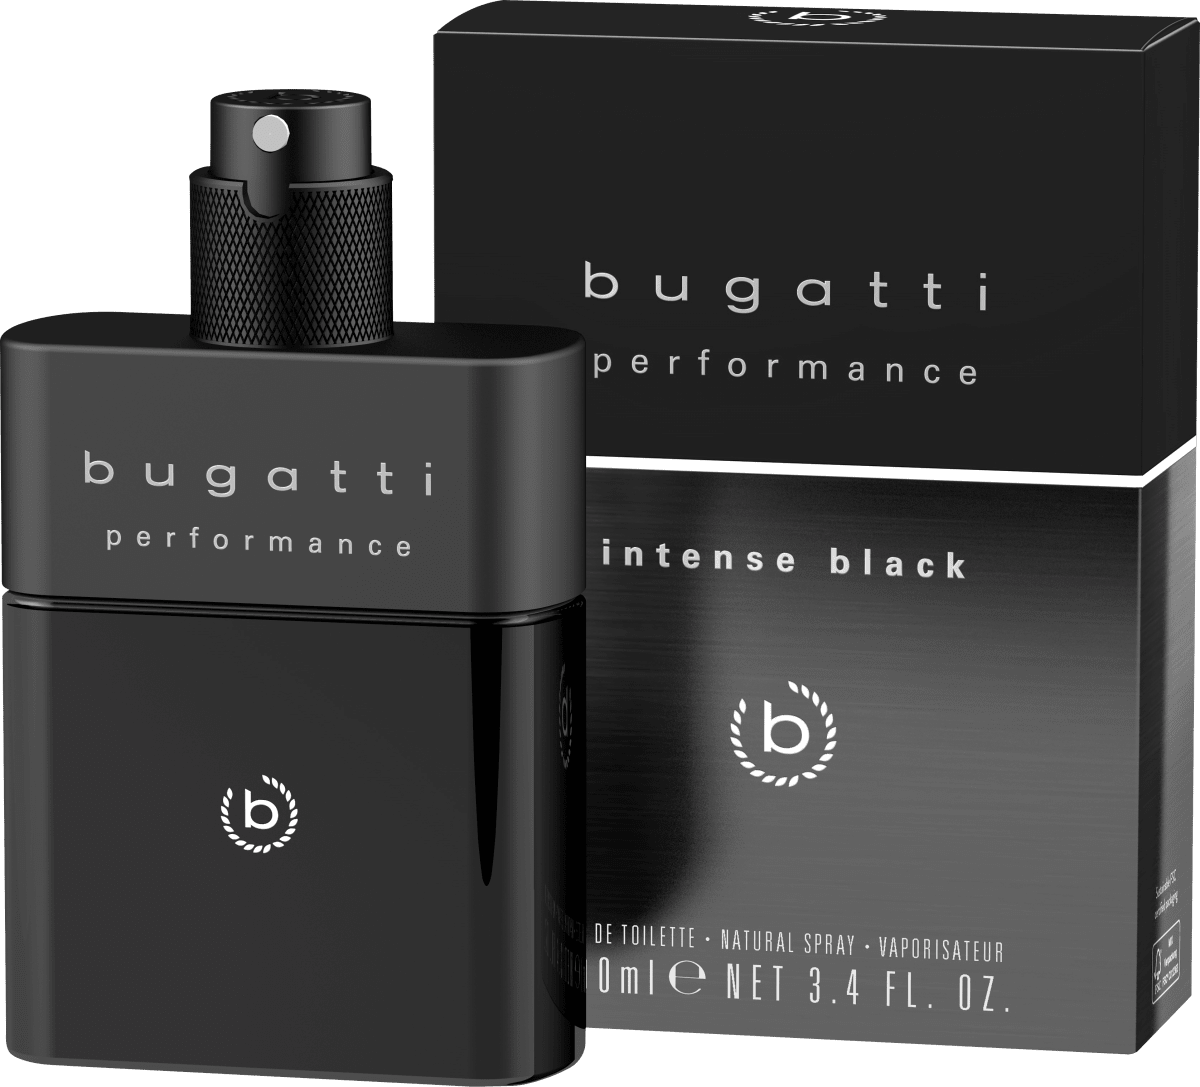 Toilette, Eau Black de Performance 100 günstig dauerhaft bugatti online kaufen Intense ml